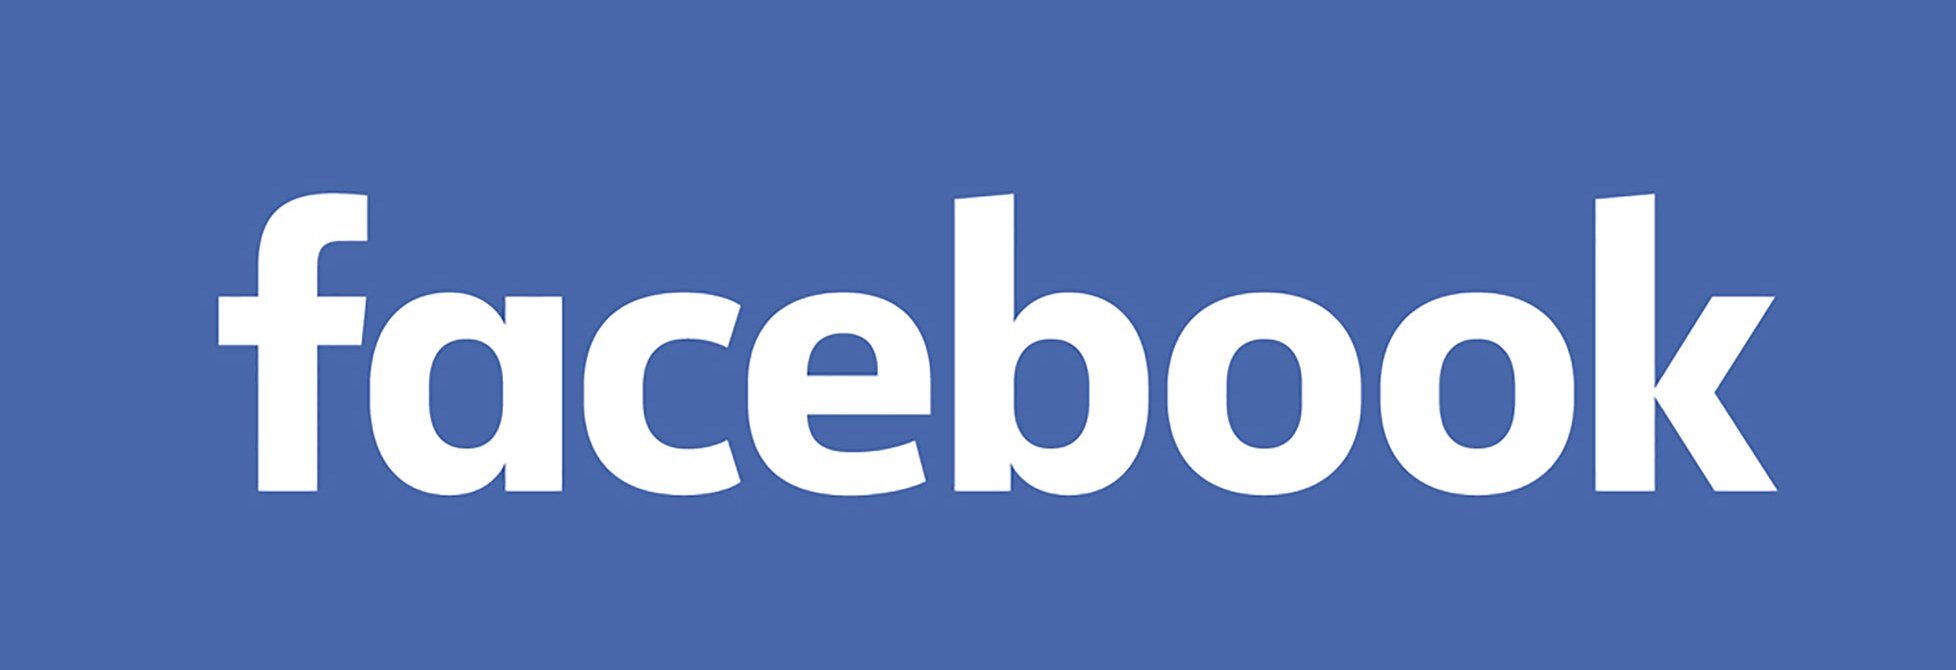 New-Facebook-Logo.jpg